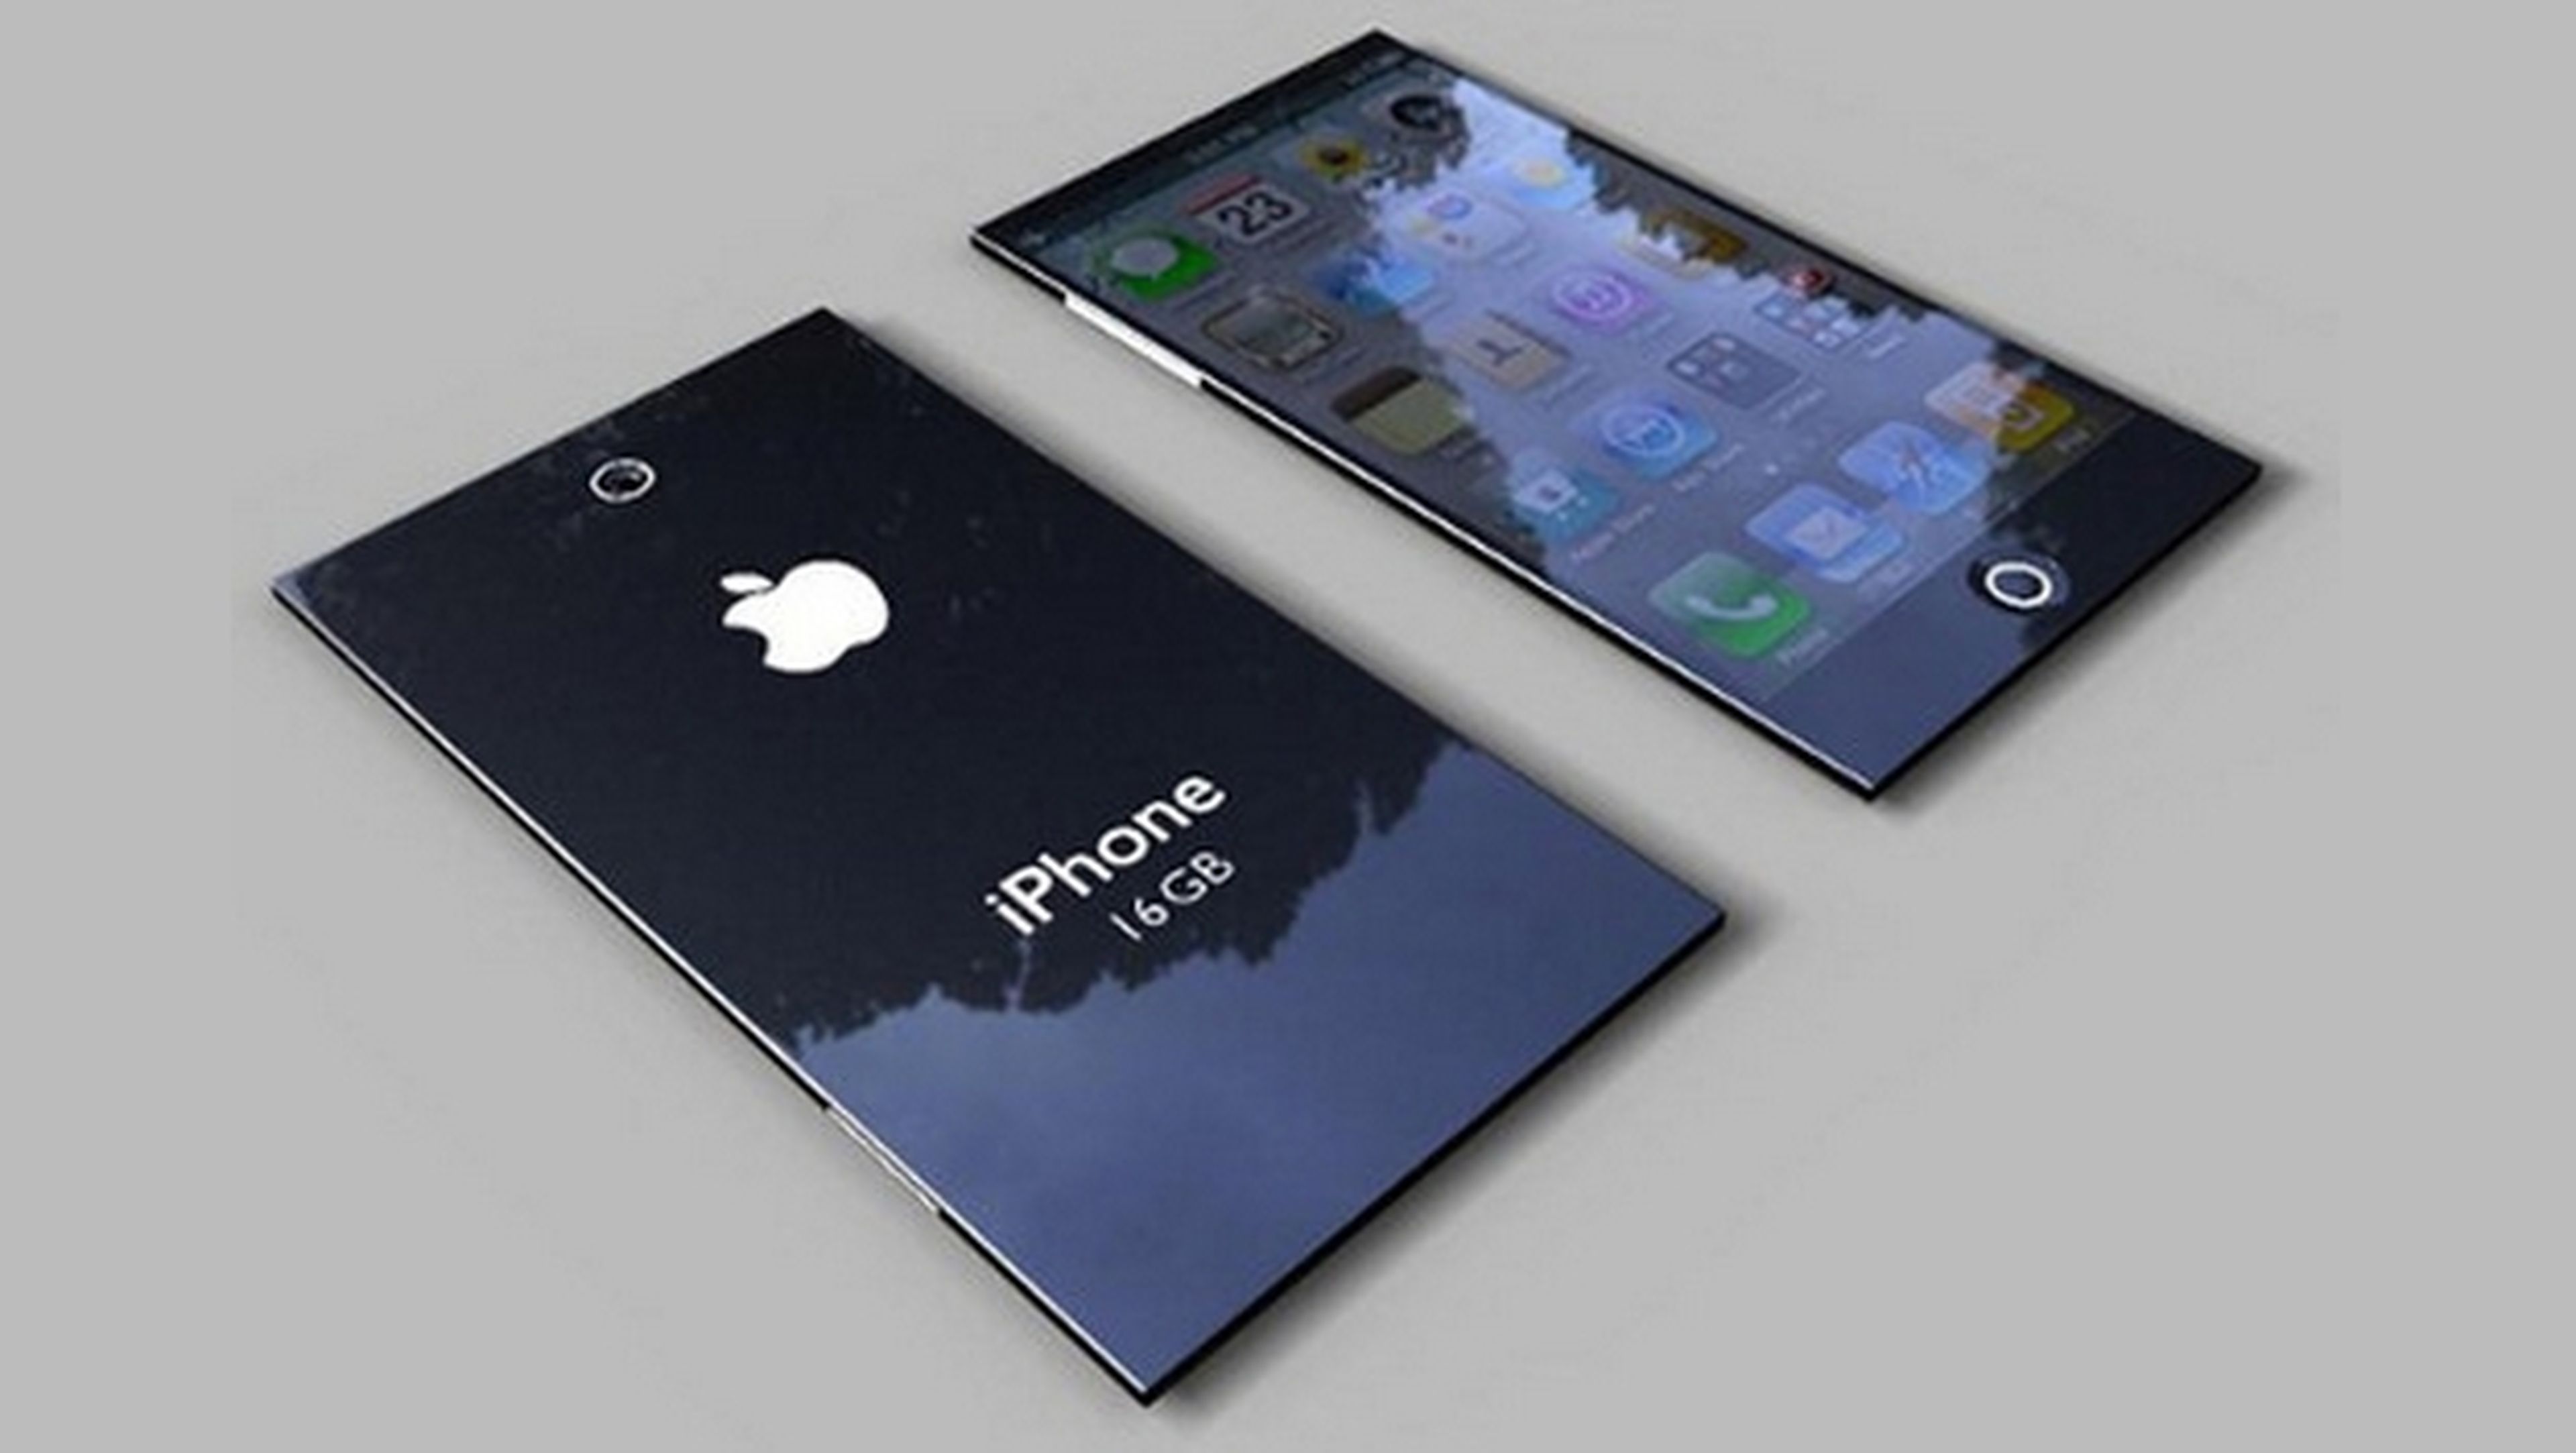 Rumores especificaciones técnicas iPhone 6 con pantalla Ultra-Retina y A8 a 2.6 GHz